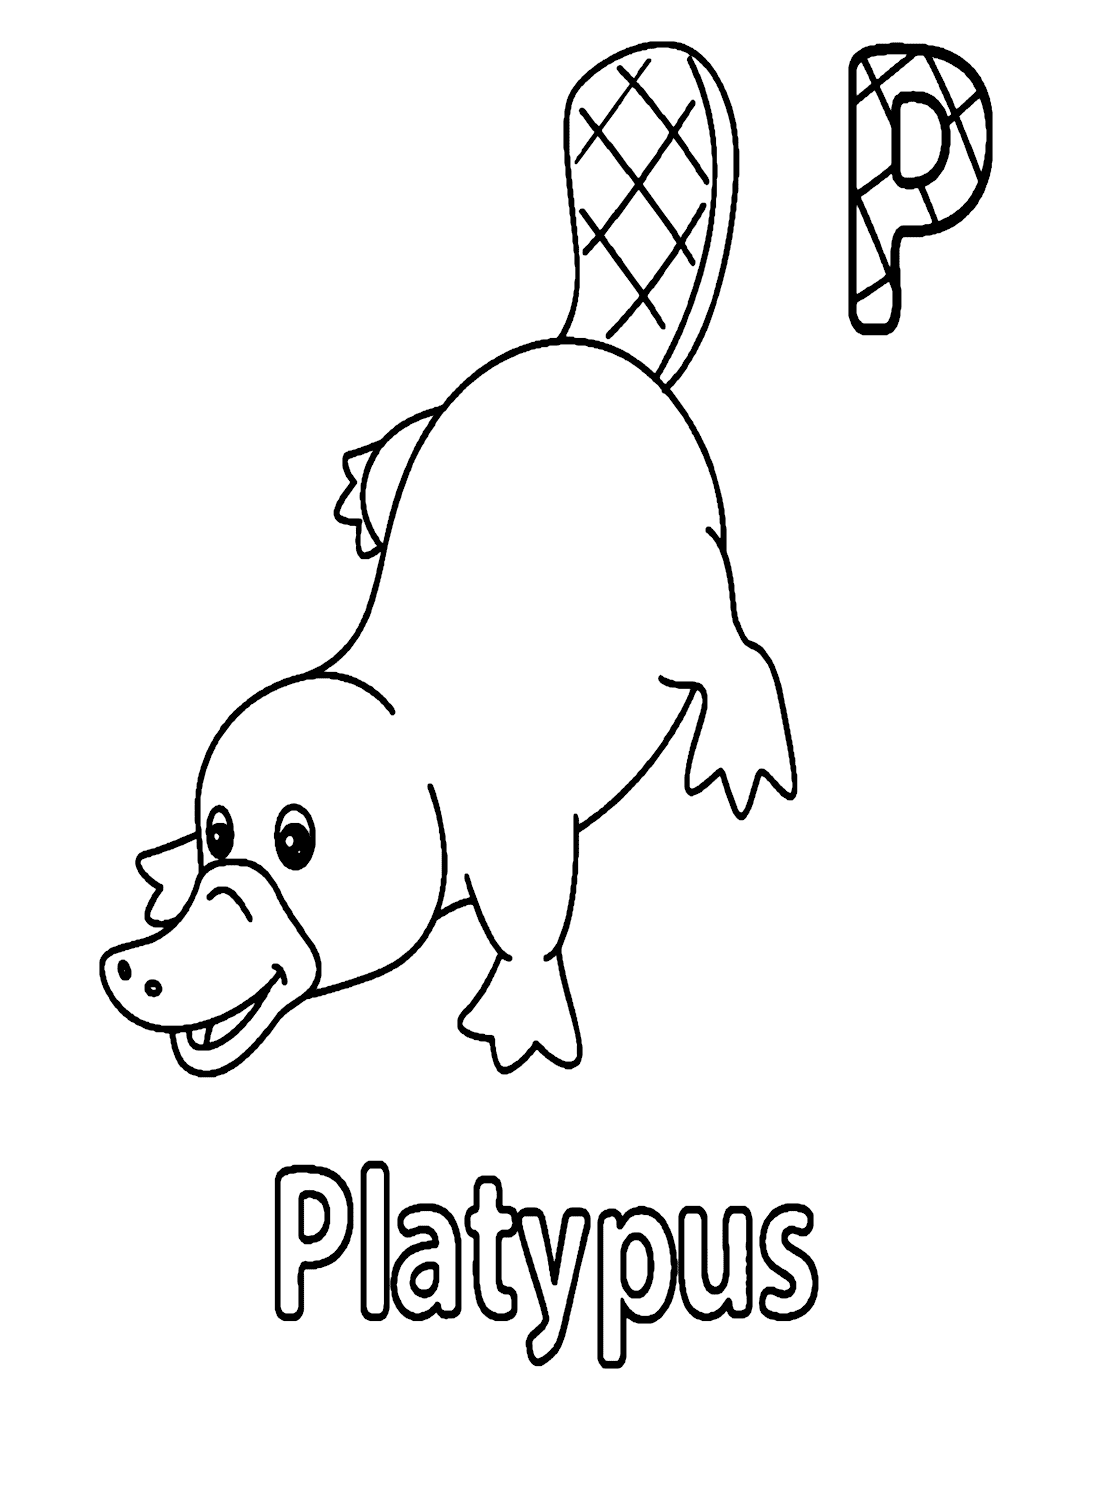 Lettera P per Platypus da Platypus